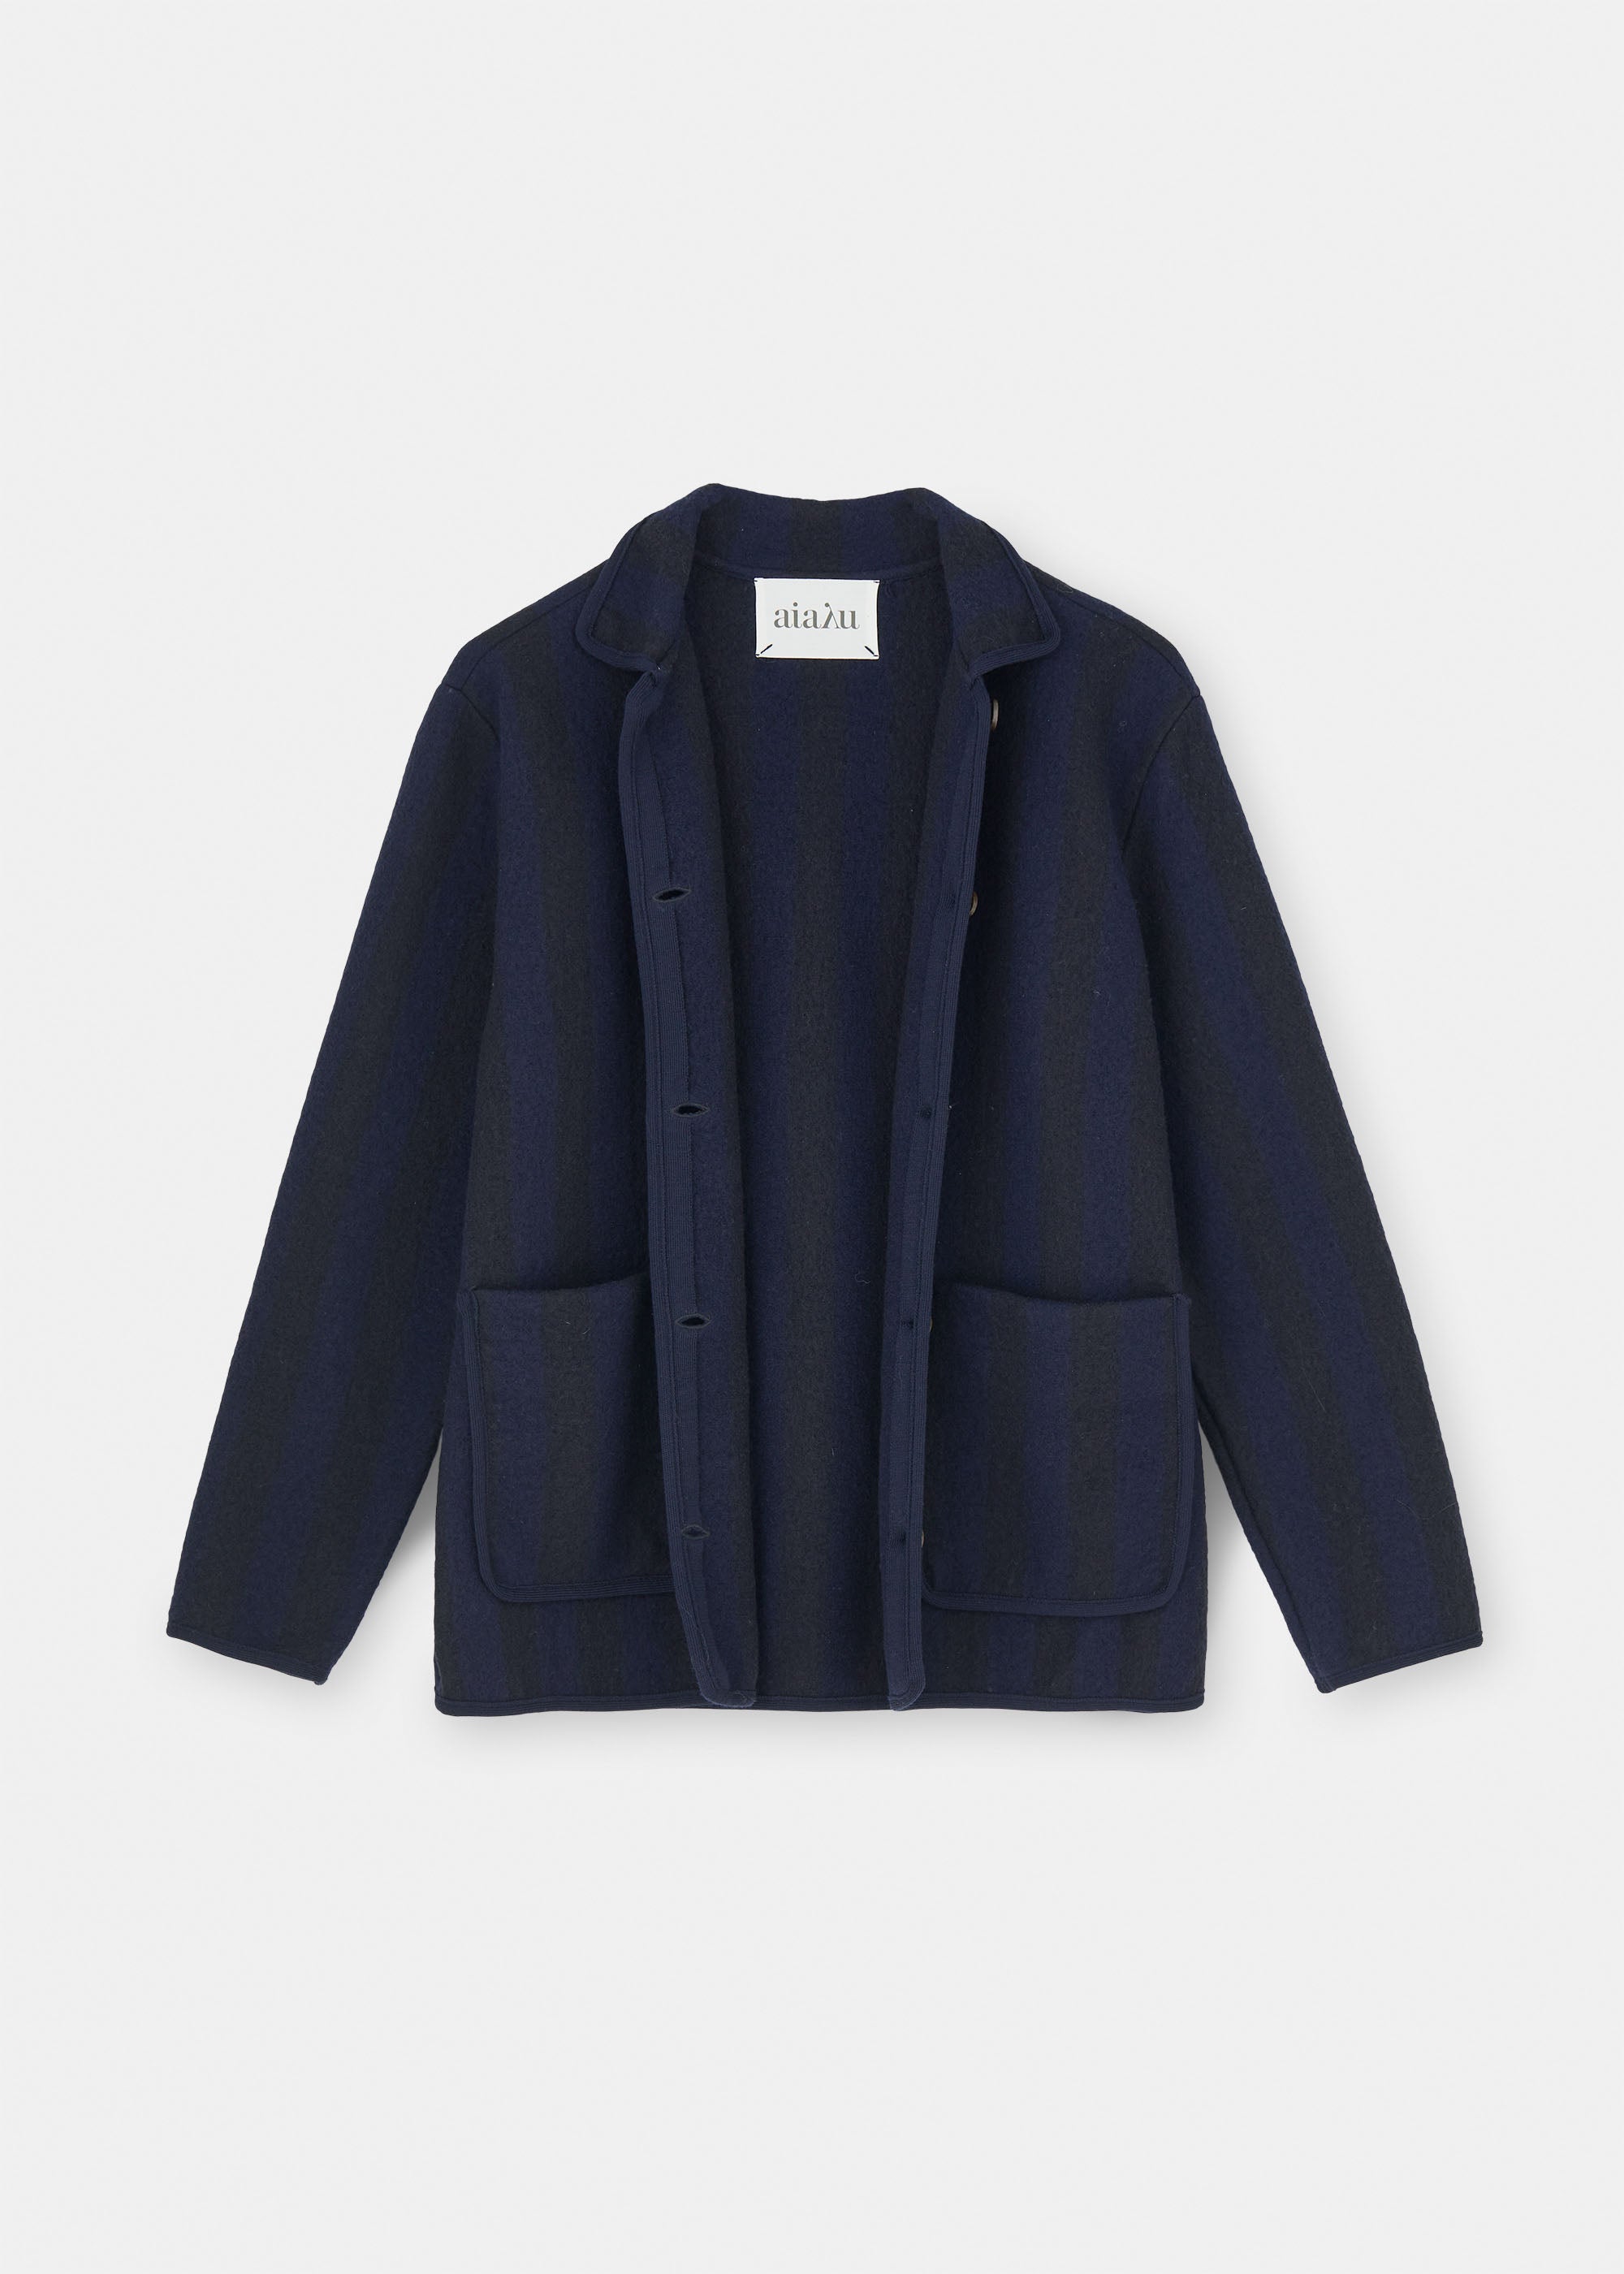 Ethan wool jacket | Mix Navy